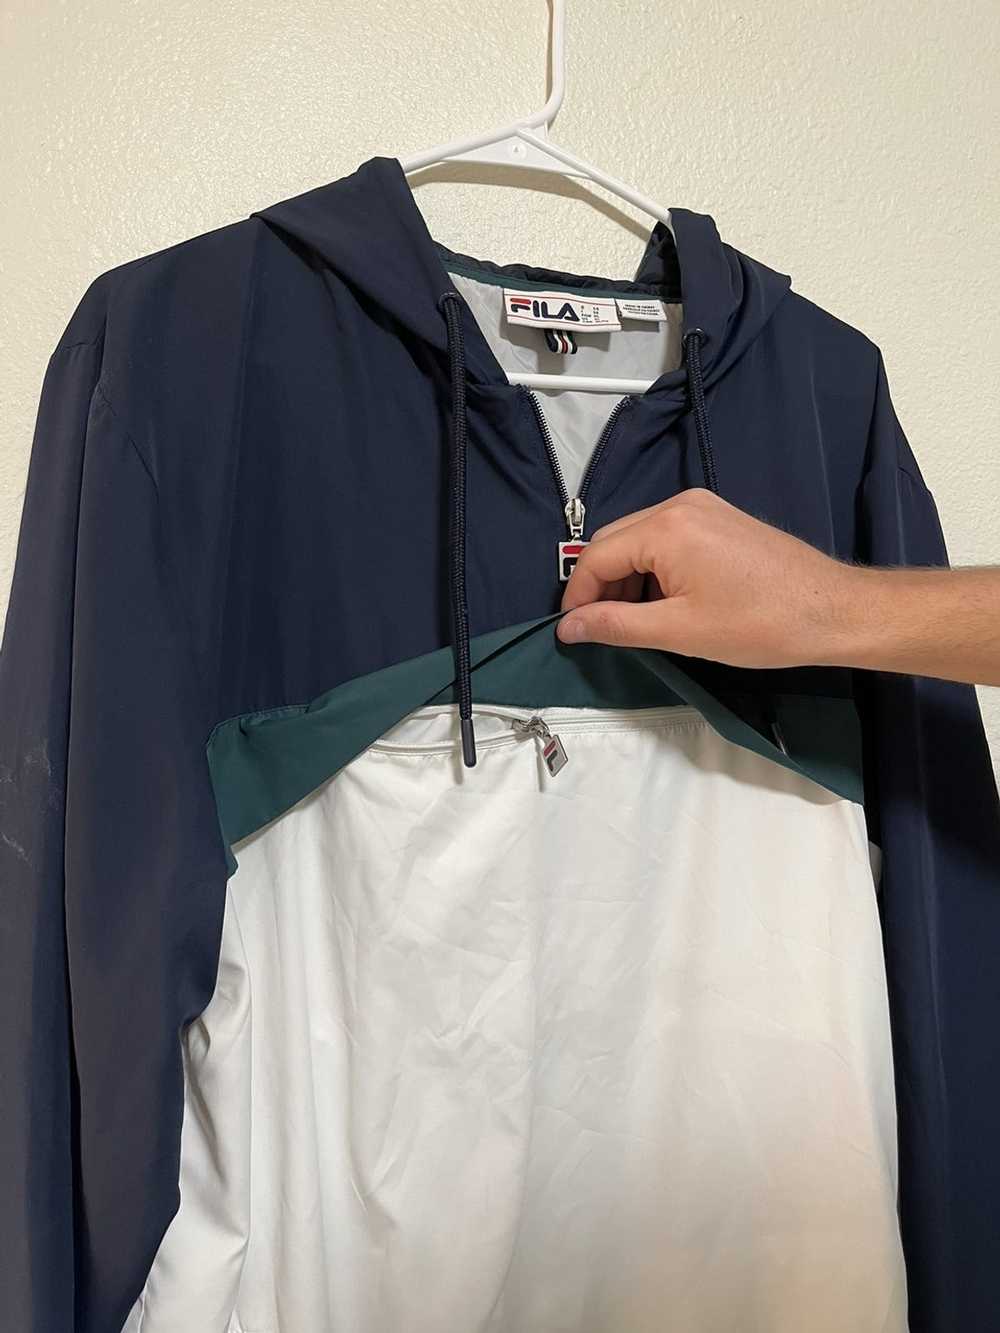 Fila FILA Raincoat - Navy Blue and White Jacket -… - image 8